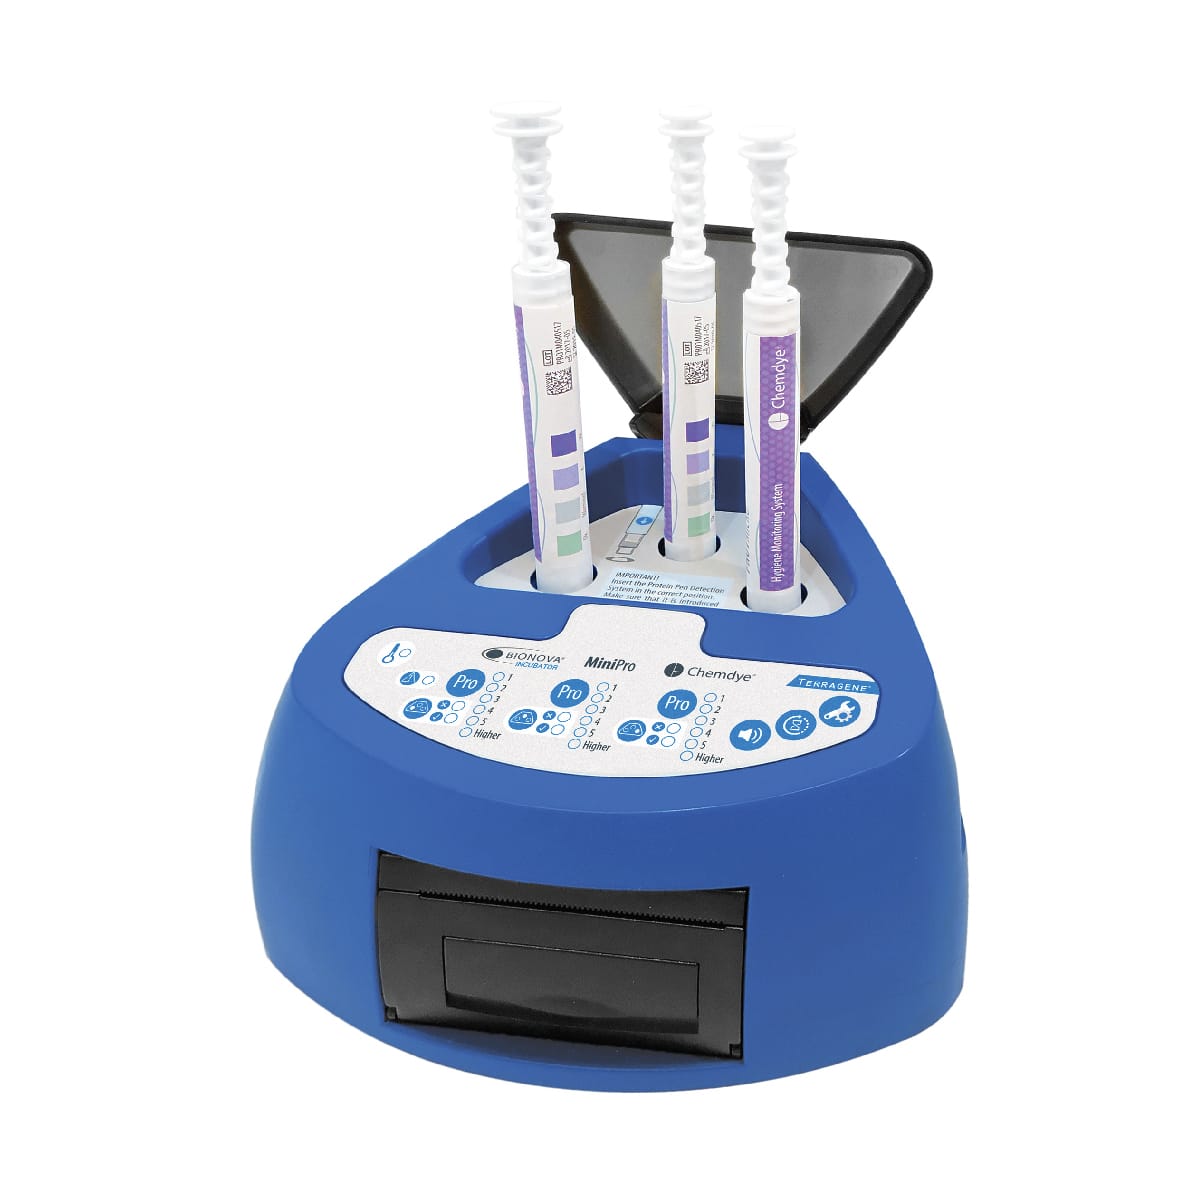 Terragene mini pro protein residue testing kit